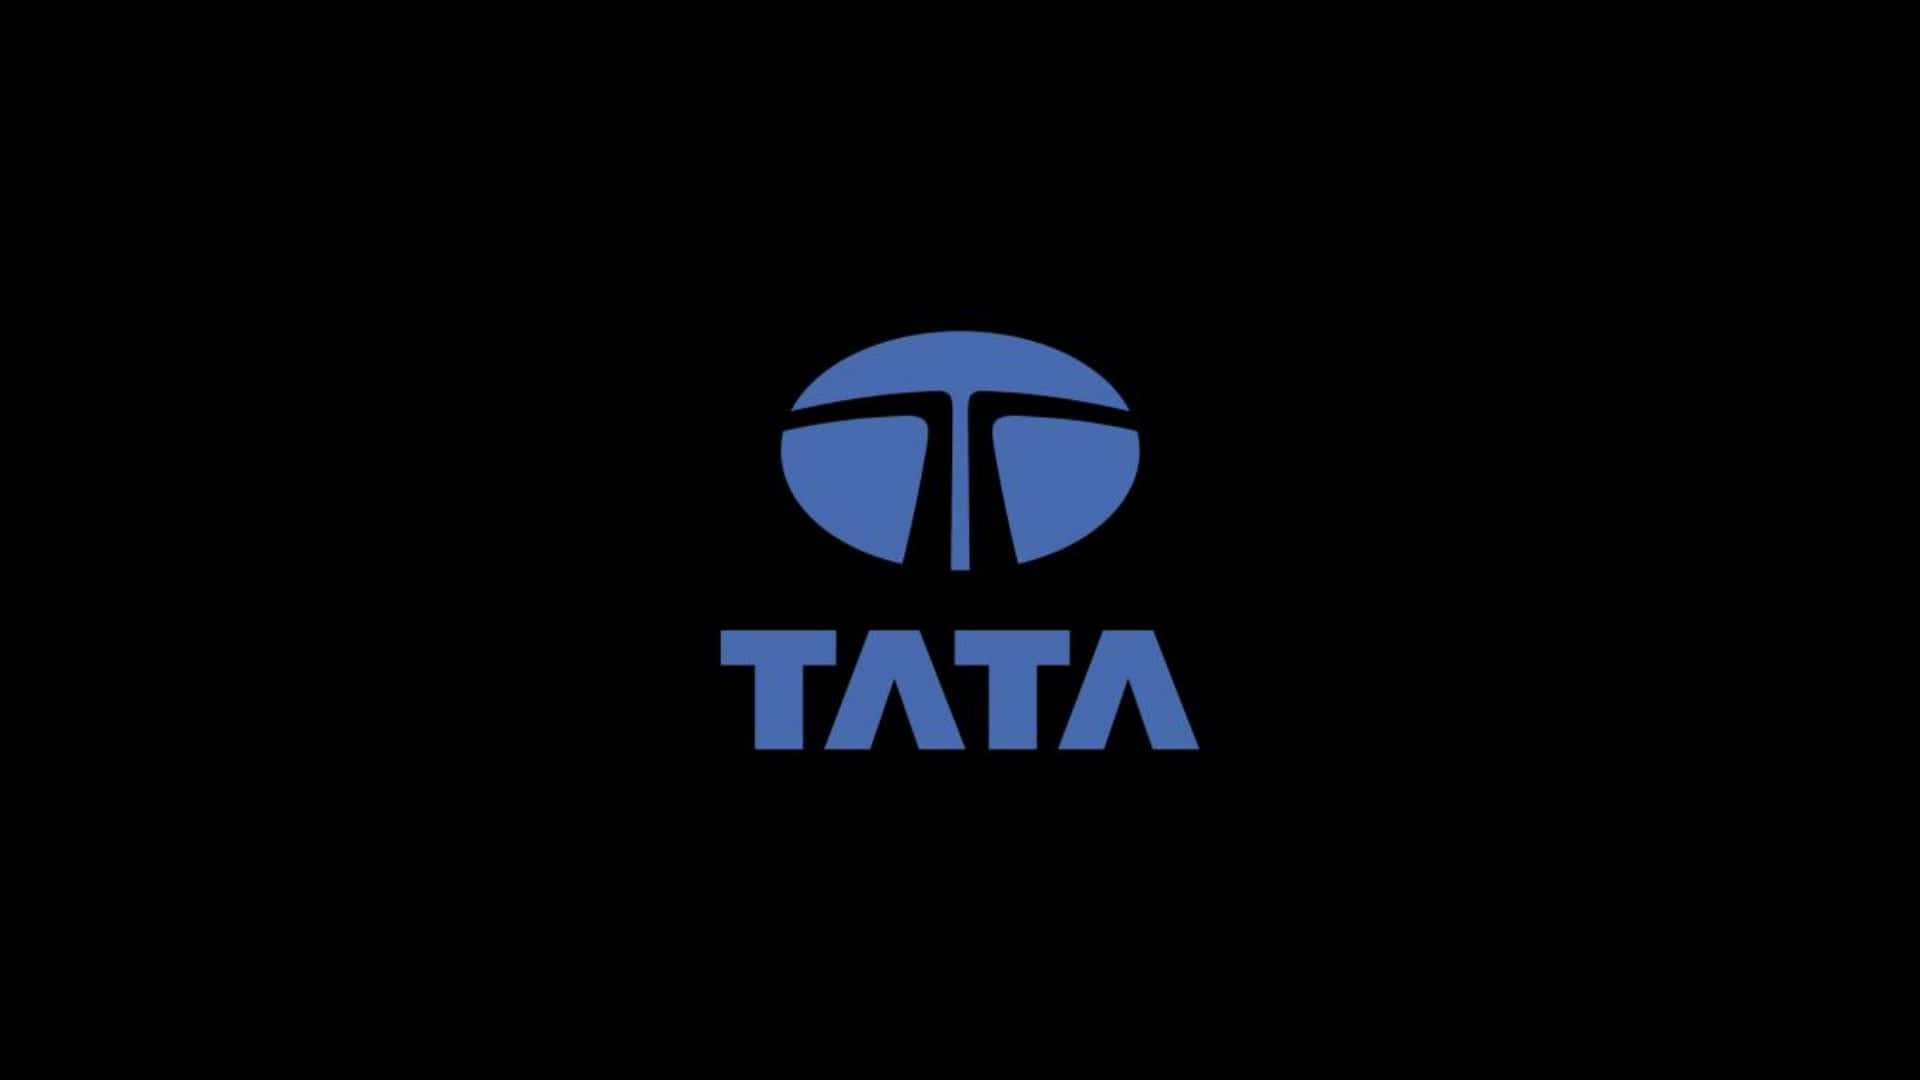 Camionescomerciales De Tata Motors En La Carretera Fondo de pantalla